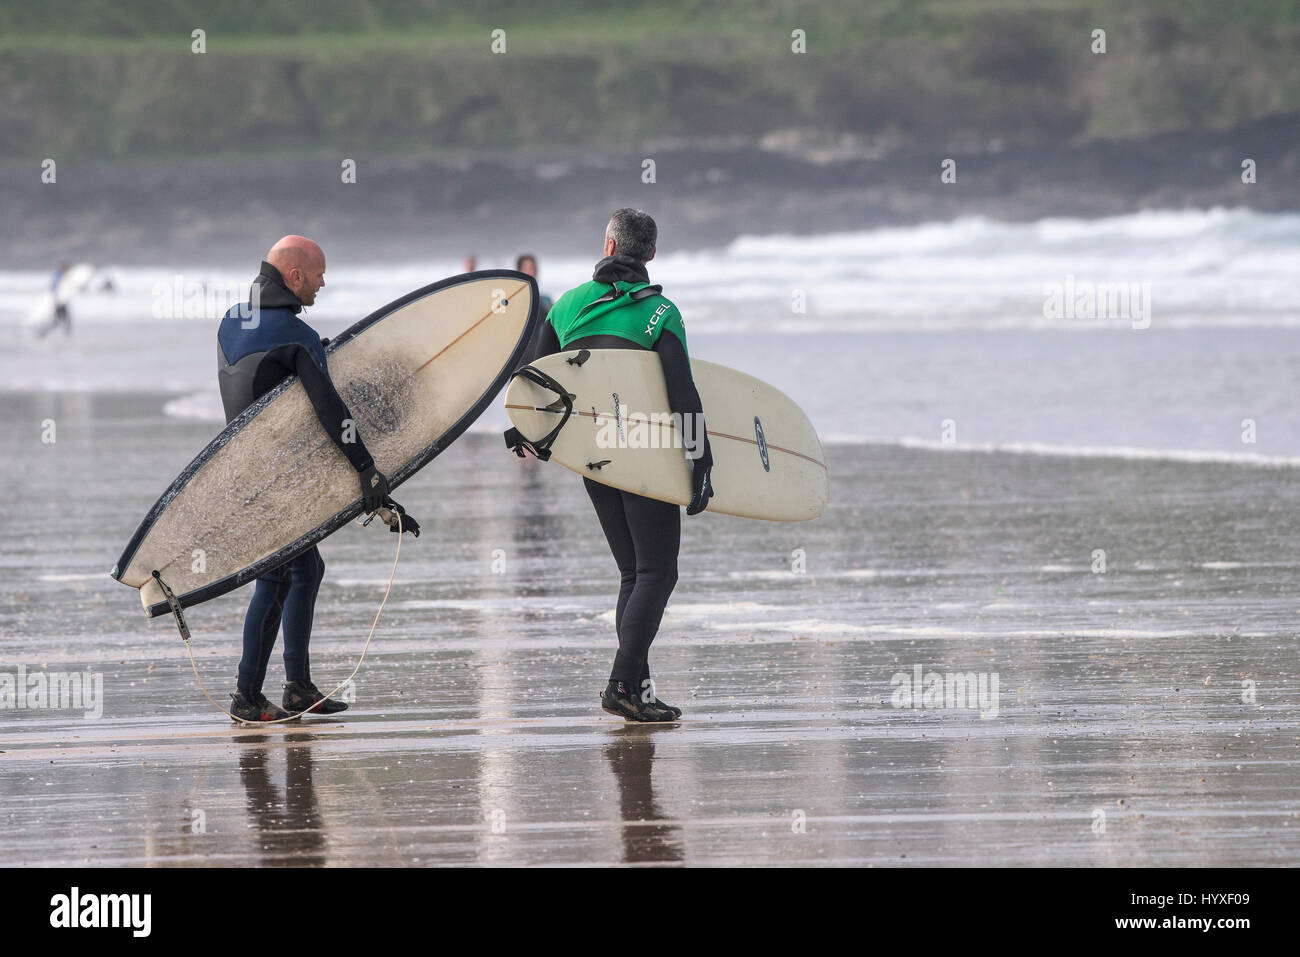 Dos surfistas llevar tablas de surf surf UK Cornwall caminando sobre náutica de recreo en el estilo de vida de actividad de ocio amigos Foto de stock